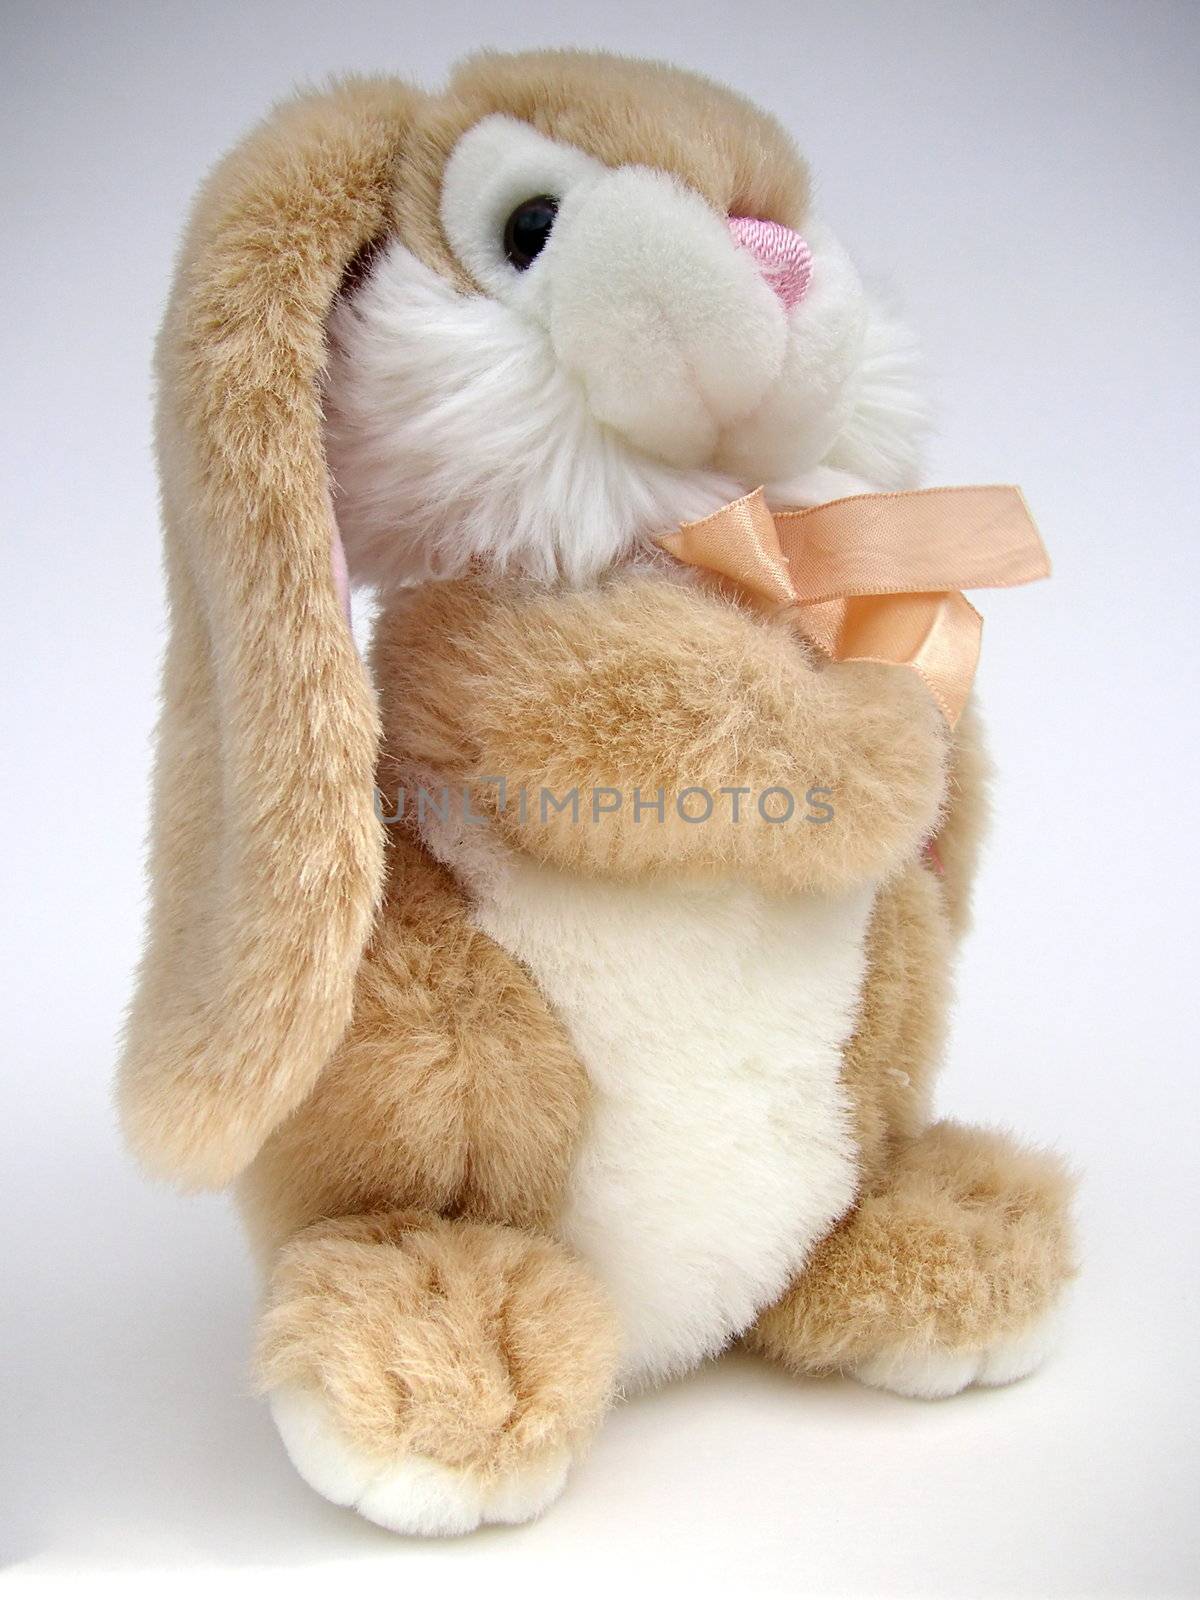 bunny rabbit  toys closeup of its face